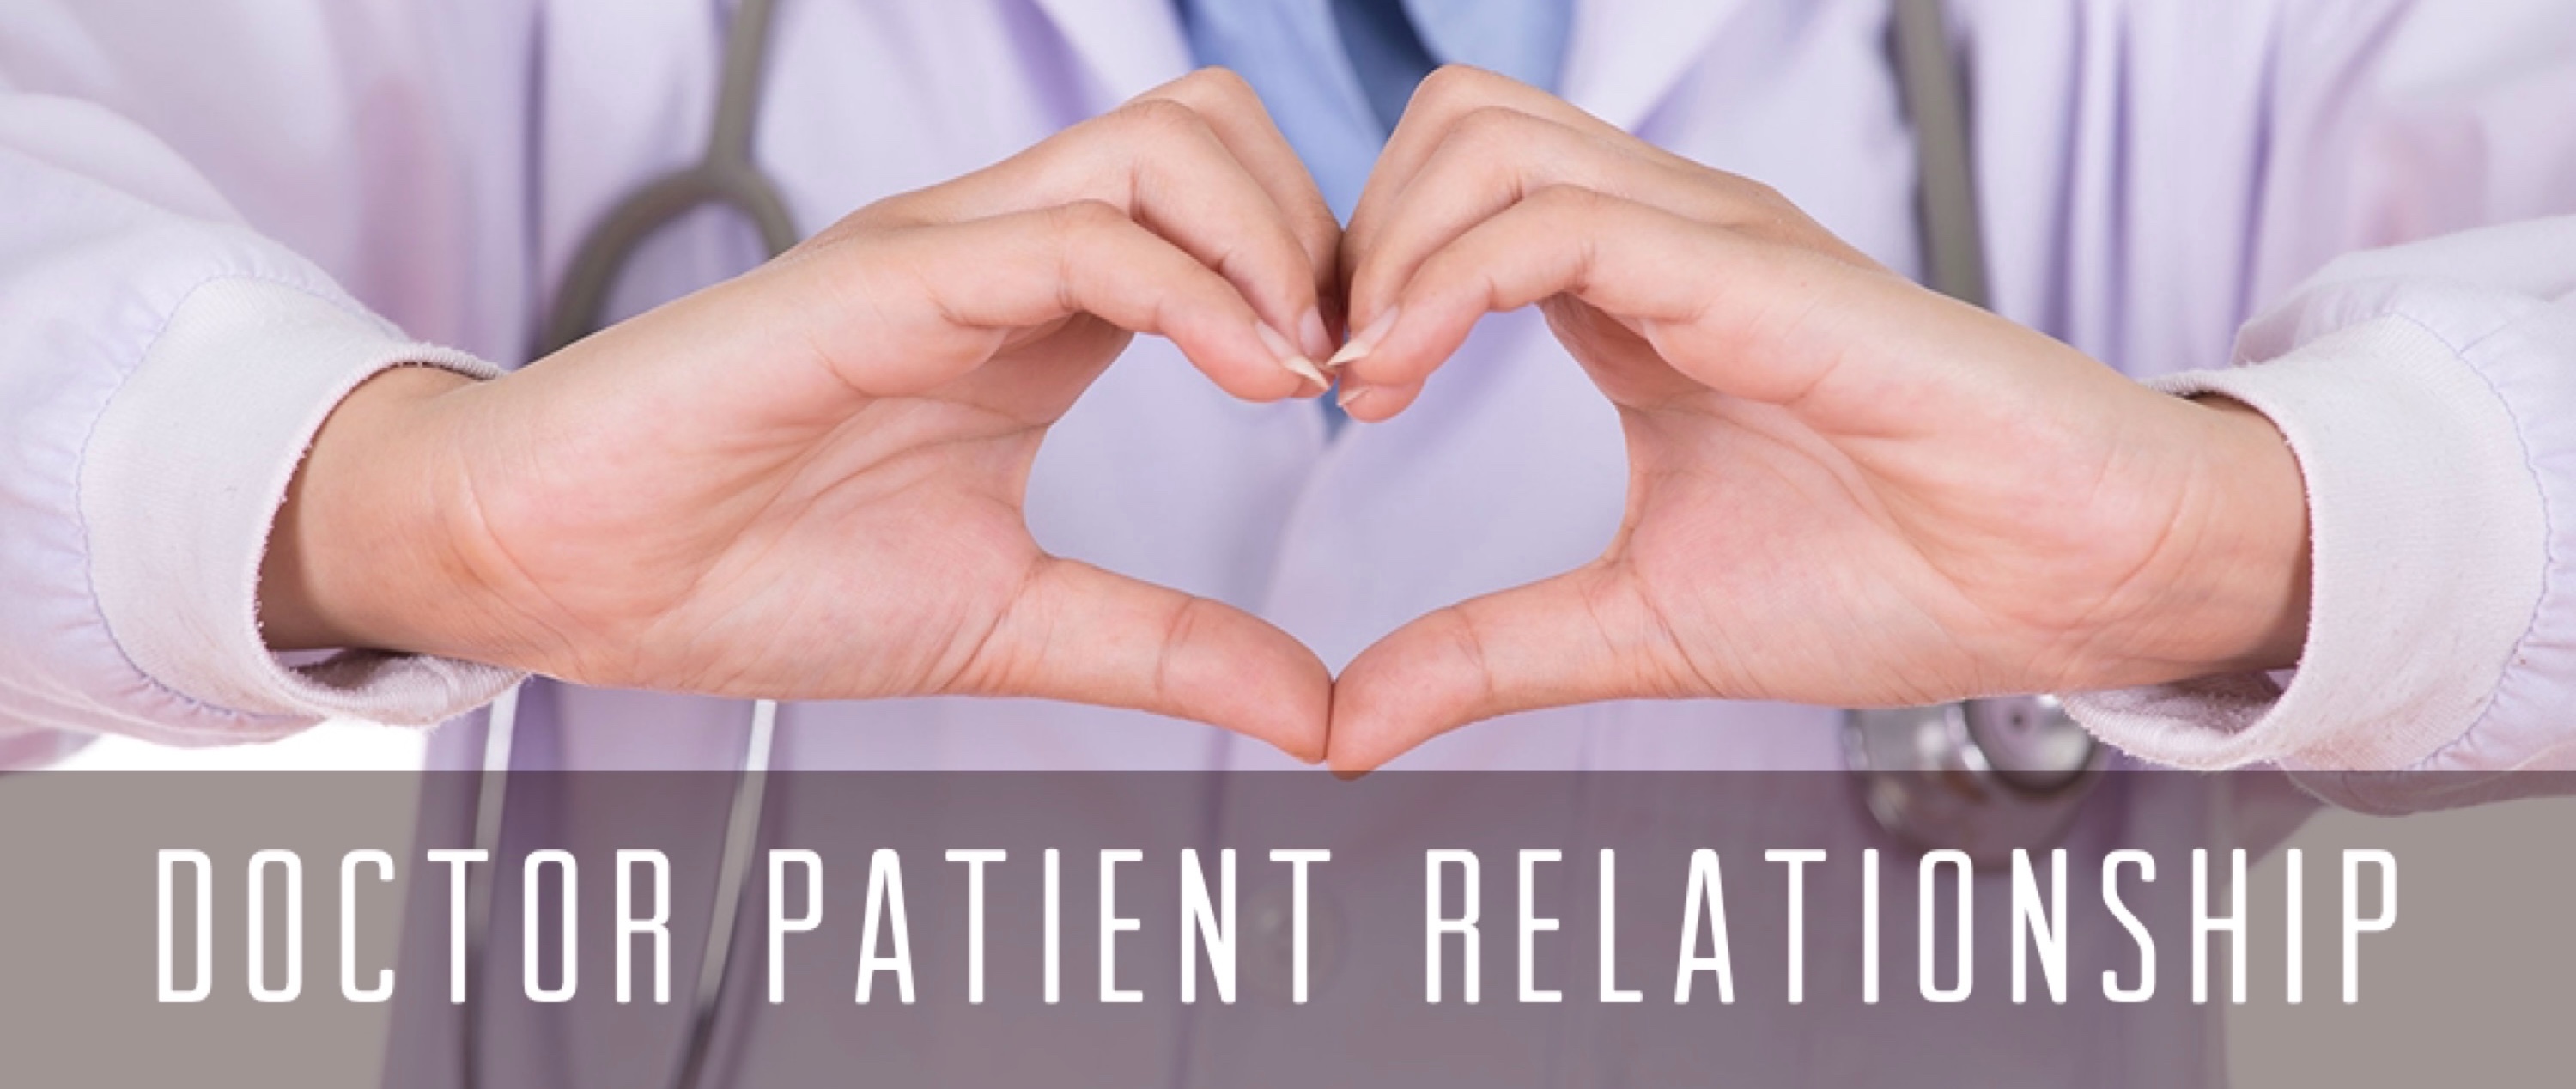 Doctor Patient Relationship